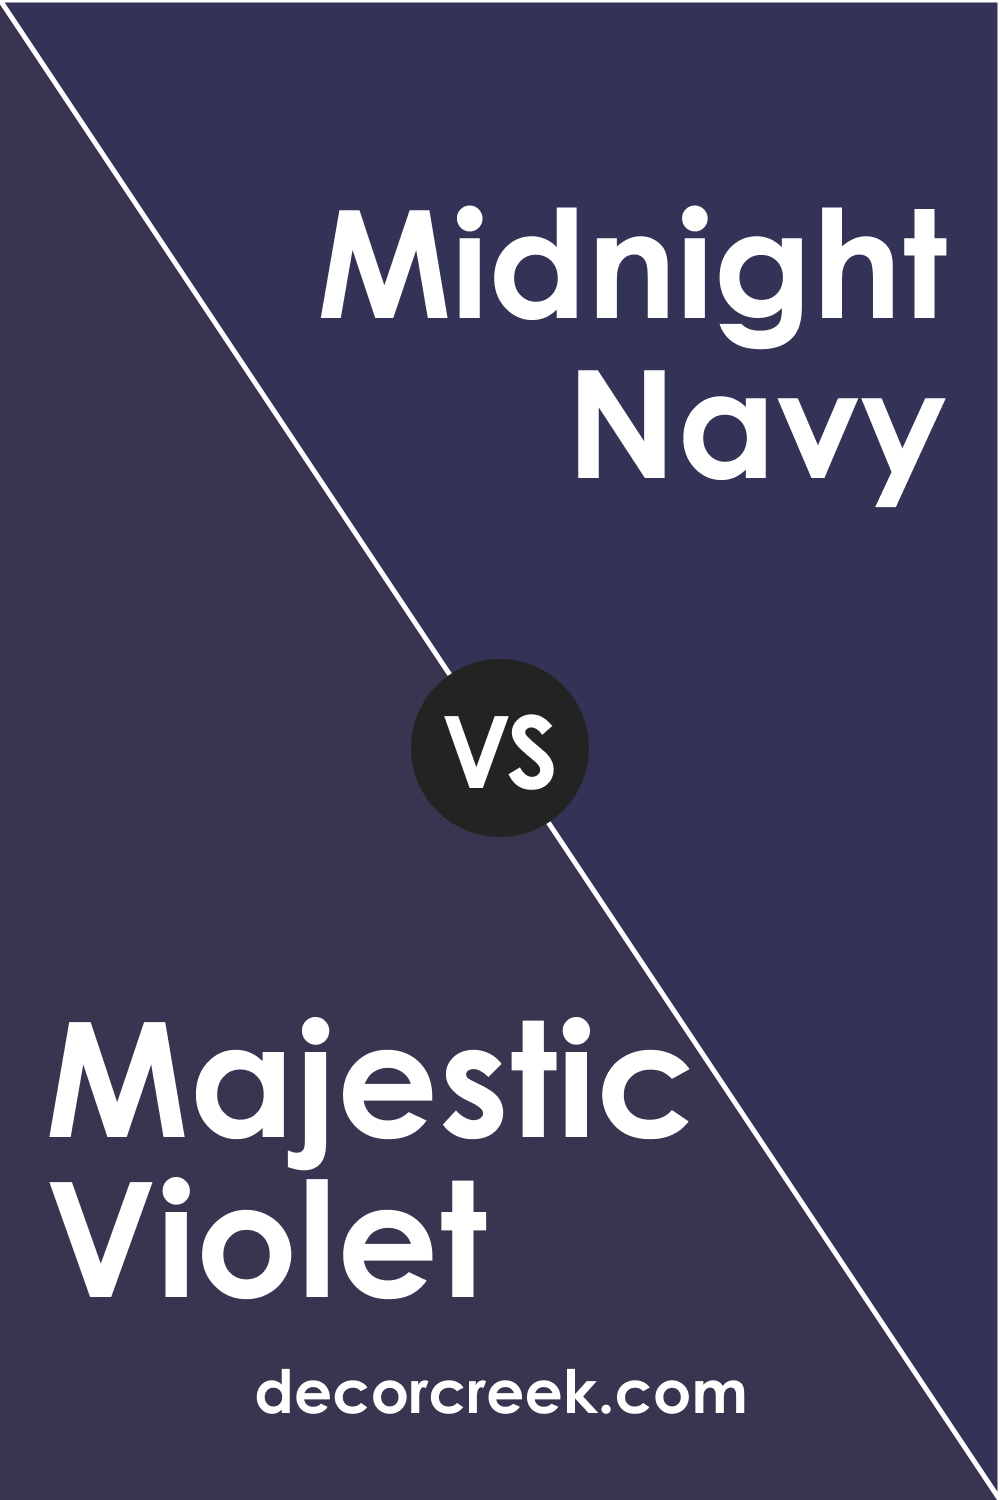 Majestic Violet 2068-10 vs. BM 2067-10 Midnight Navy